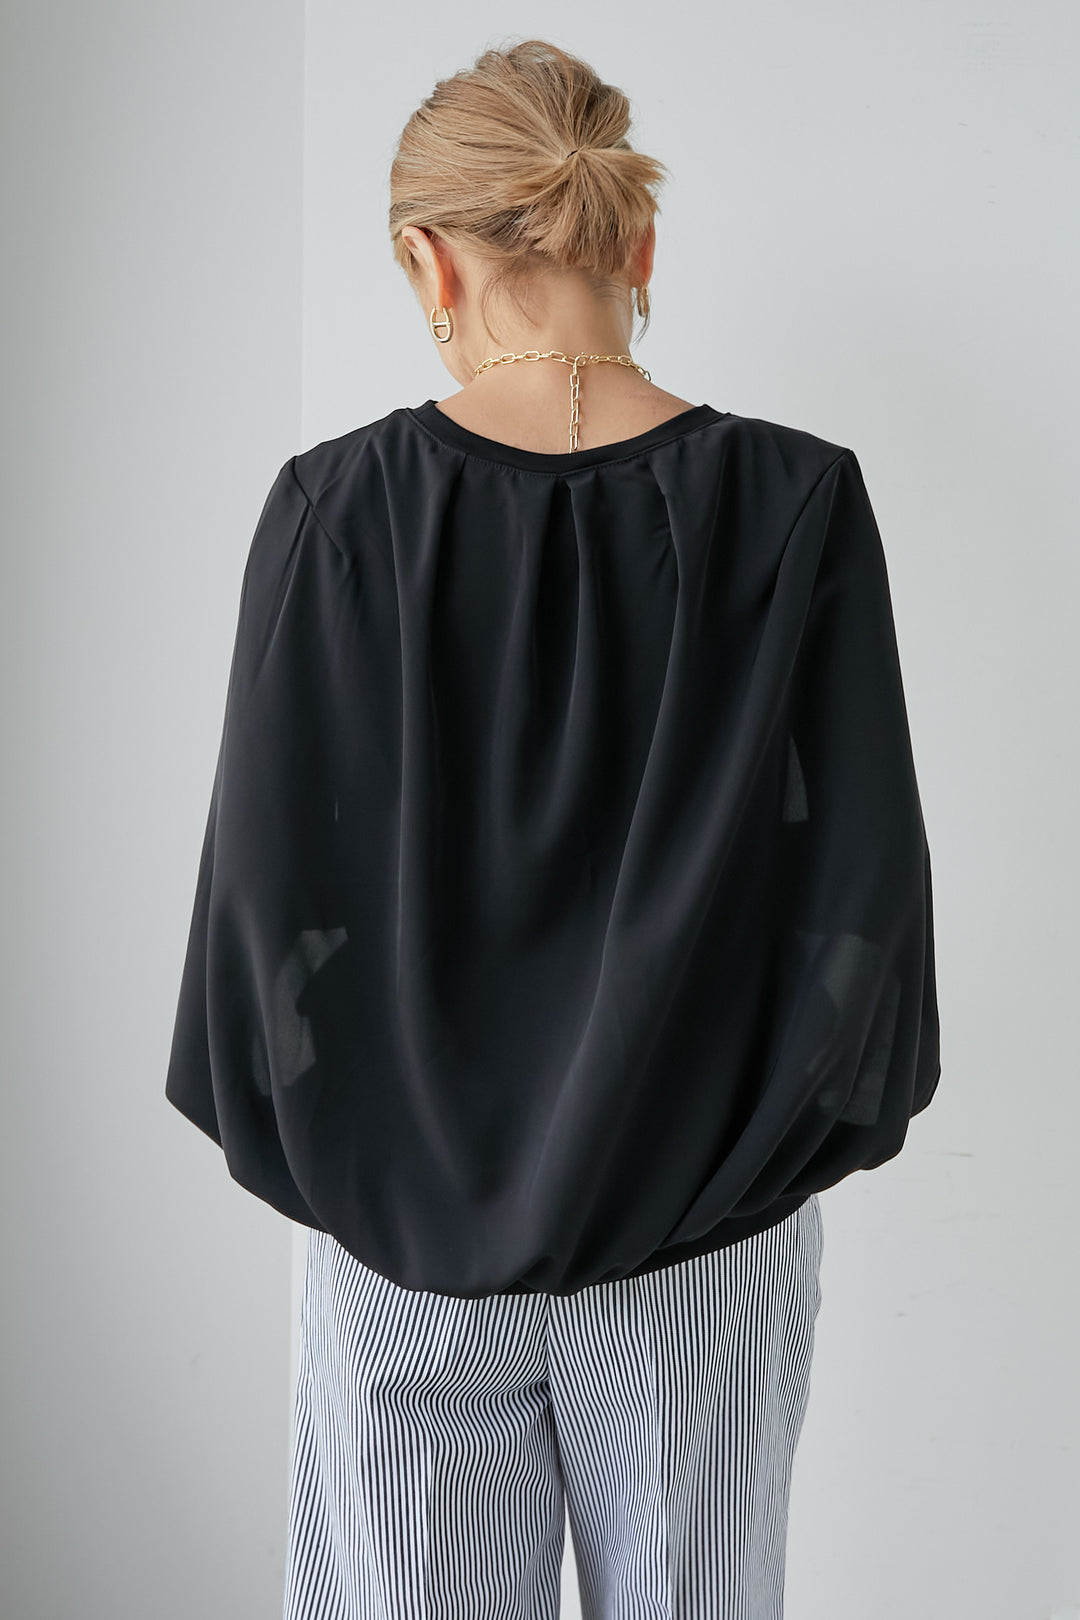 Cape cloak pullover